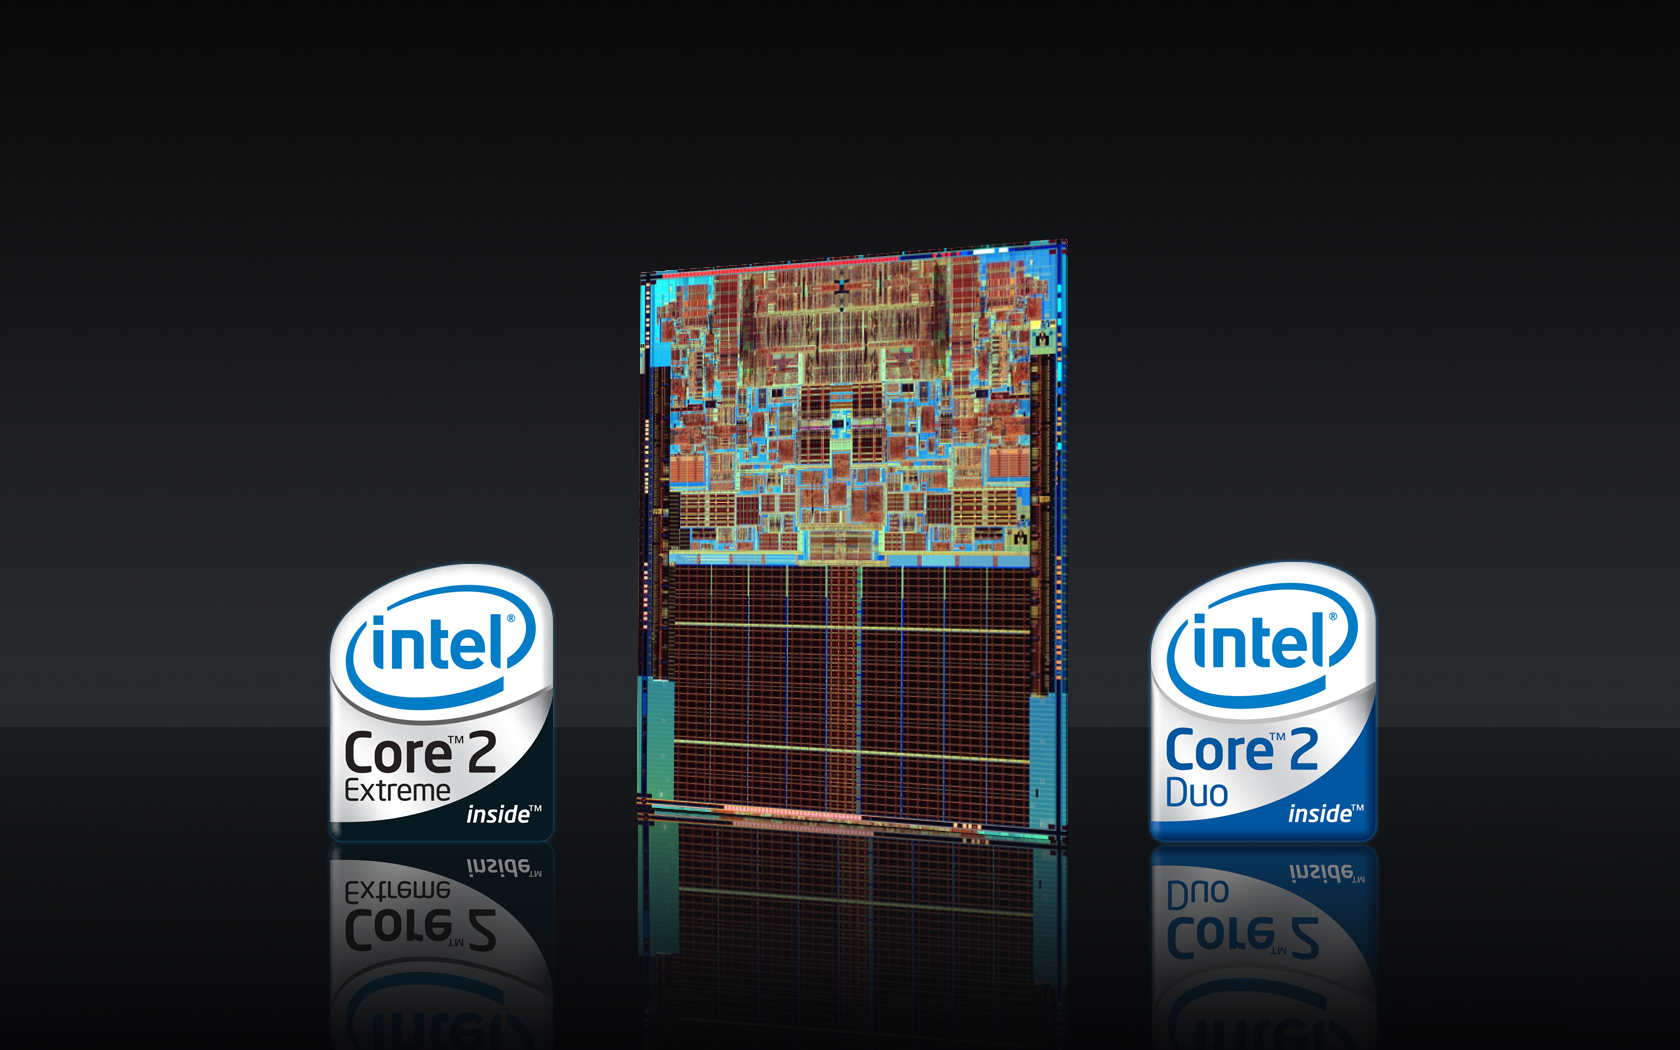 Интел 2 дуо. Intel Core 2x Duo. Intel Core 2 Duo inside. Ячейка Intel Core 2 Duo. Интел москва